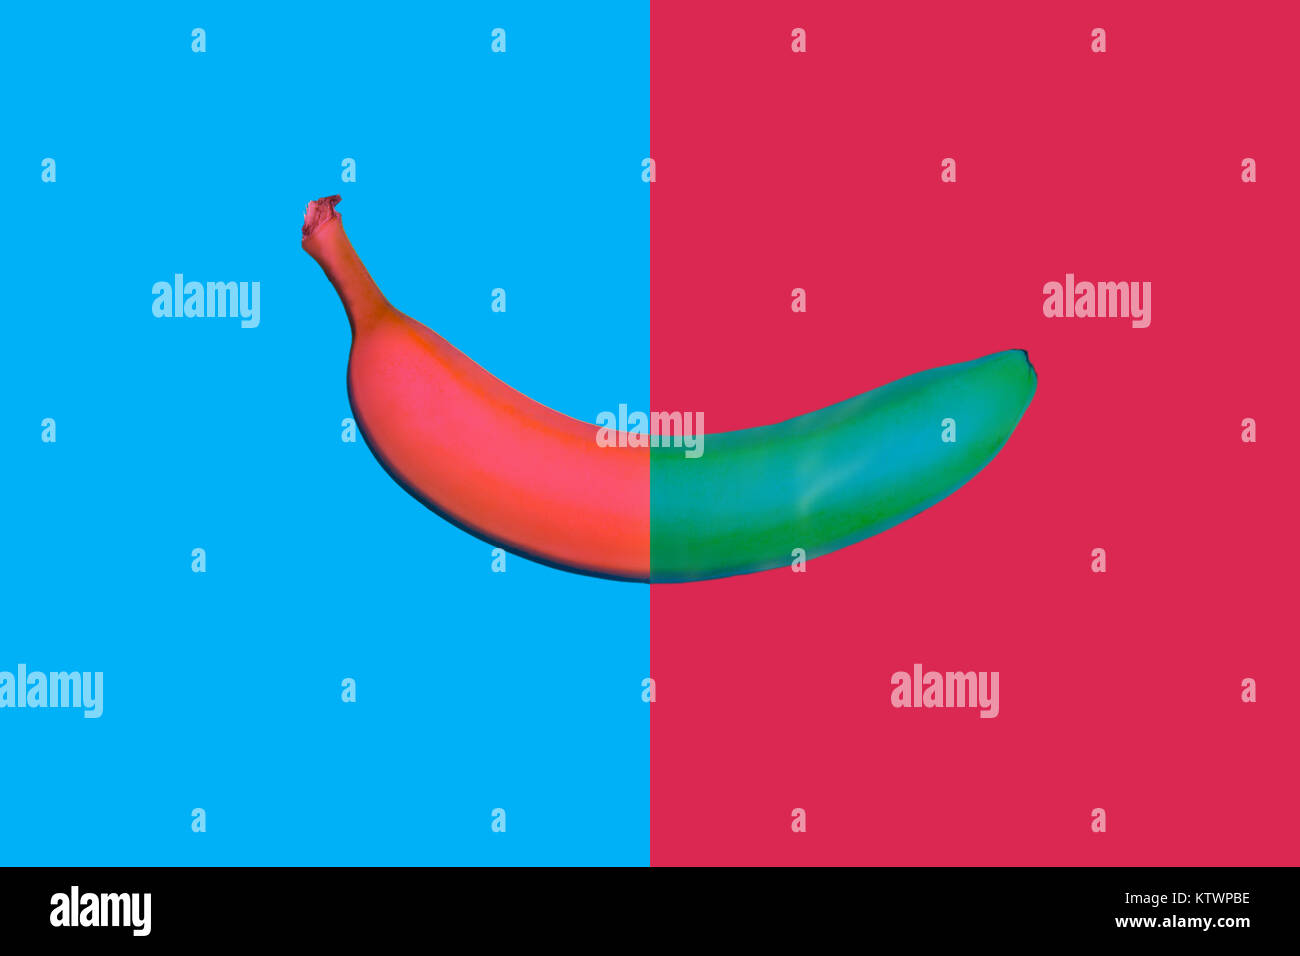 Abstrakte Flat Style von zwei farbigen Banane Stockfoto